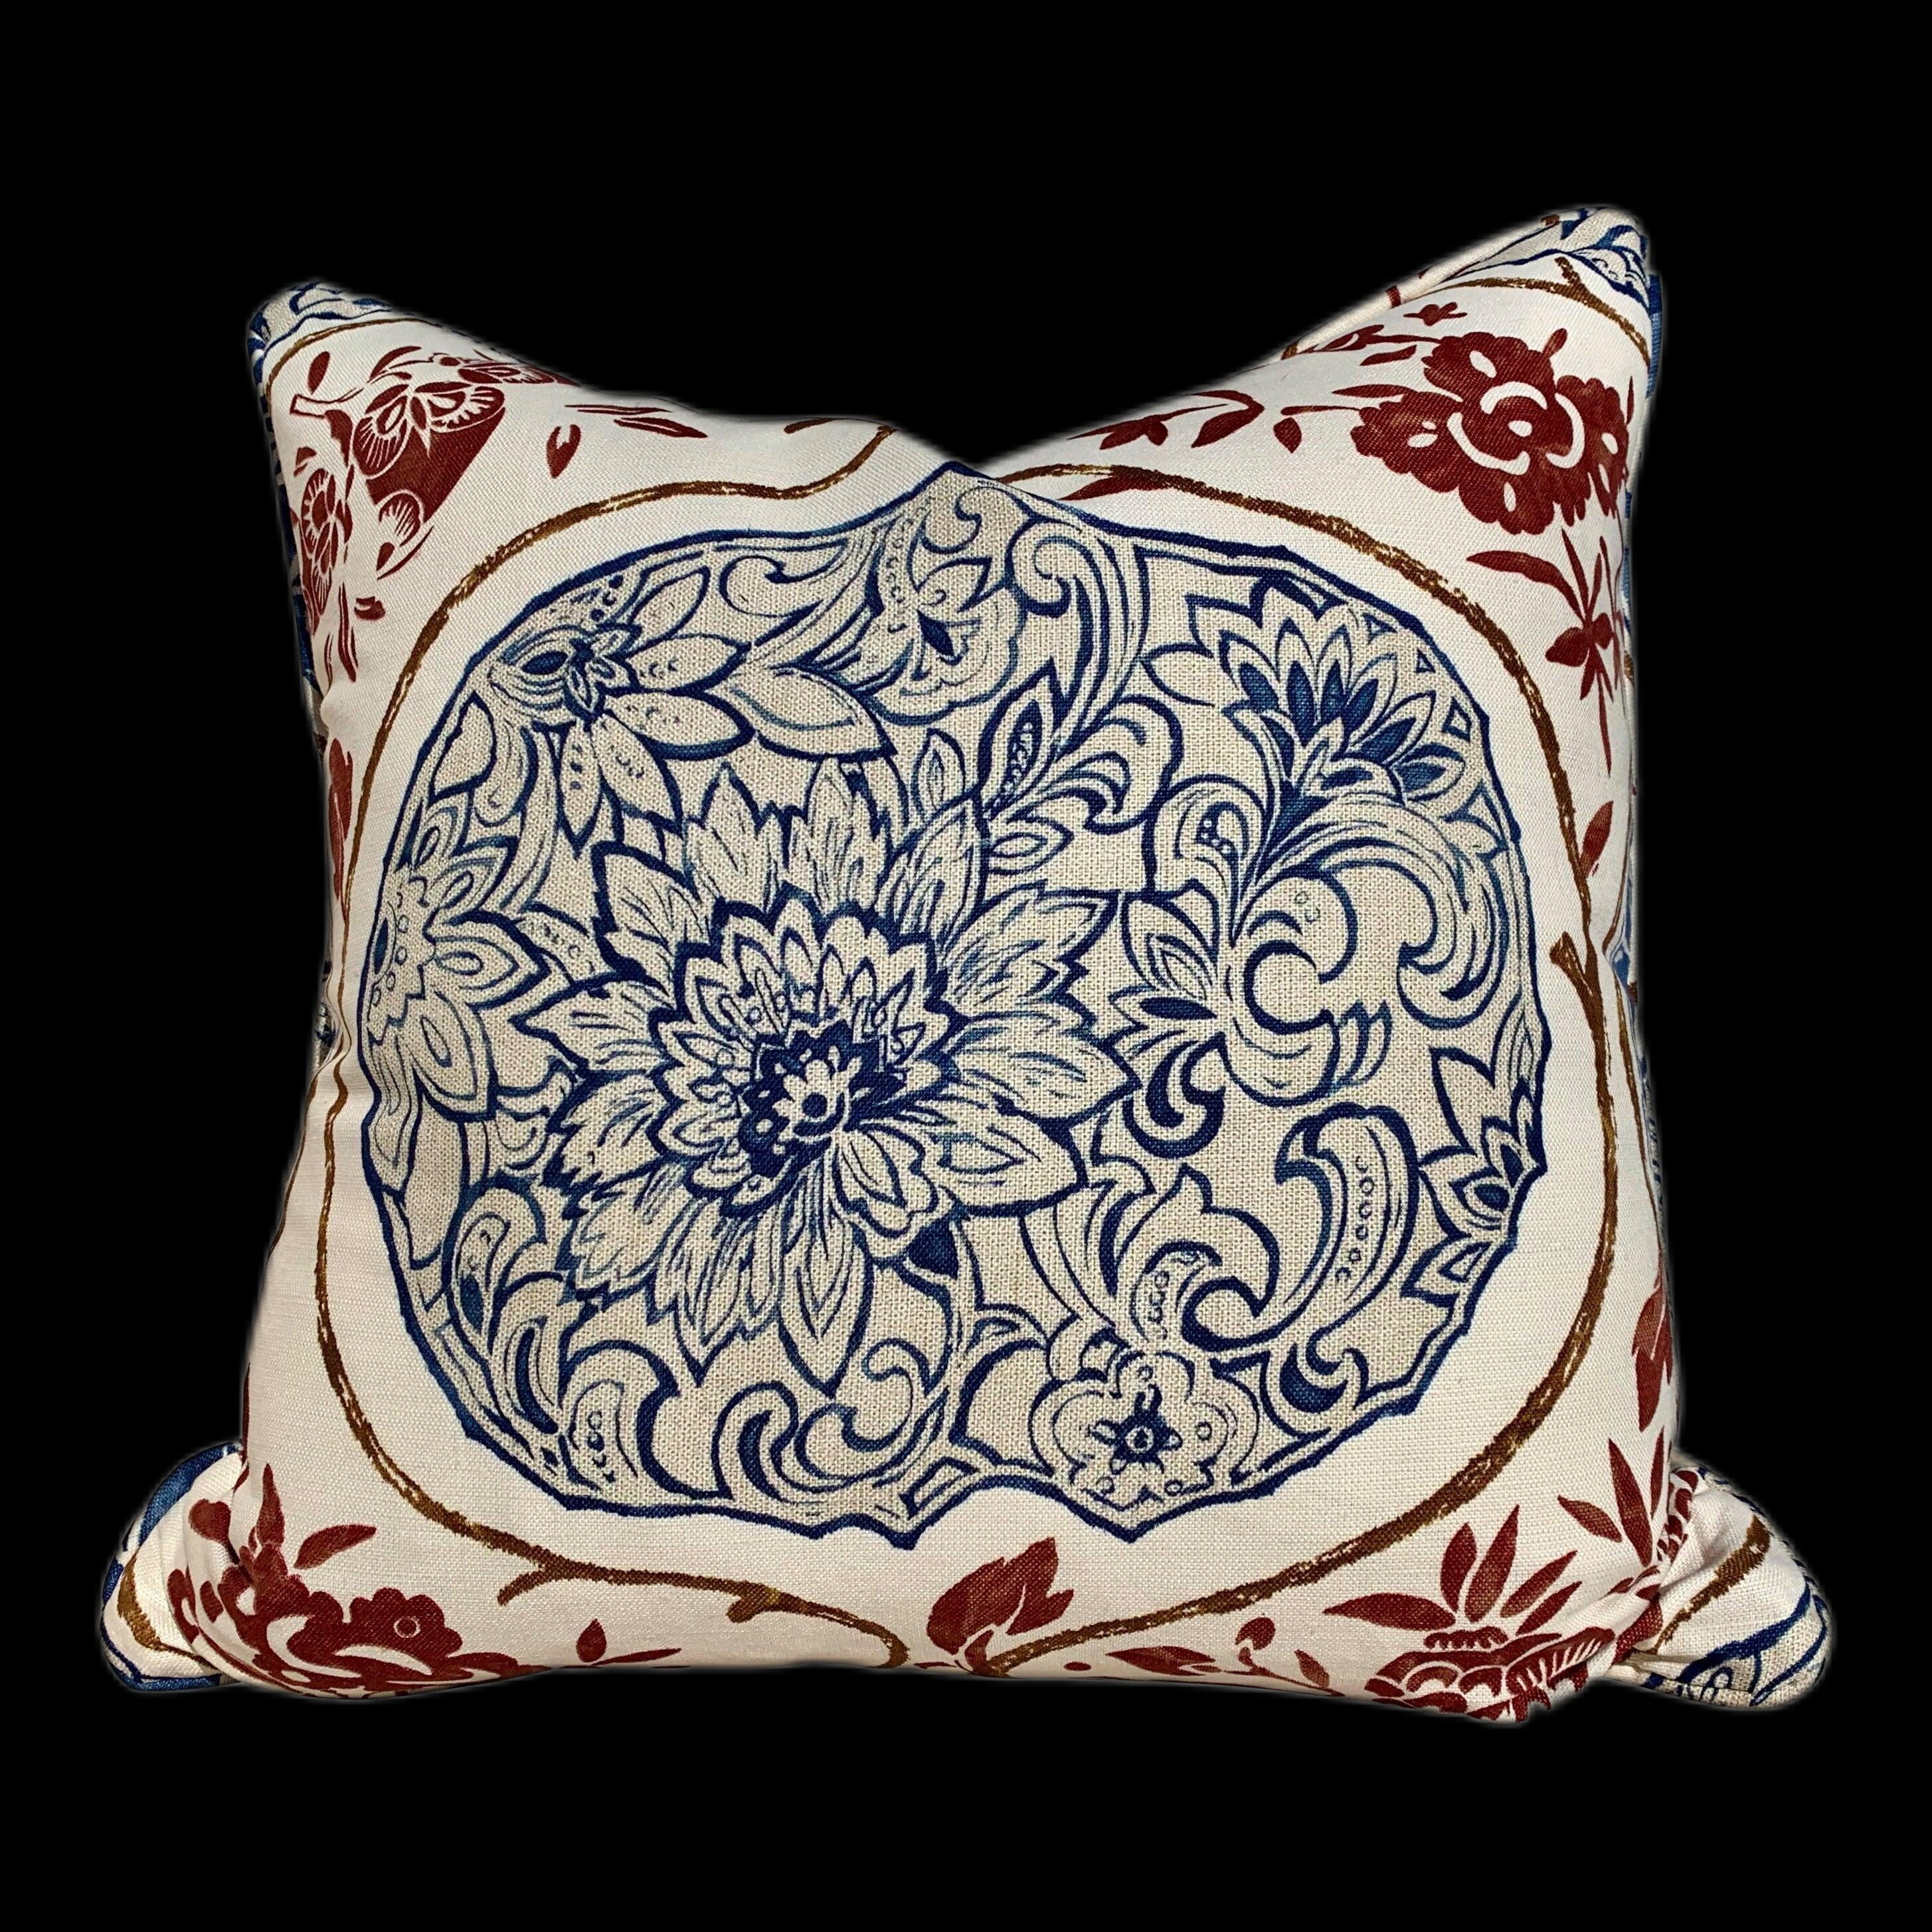 Schumacher Katsugi Pillow in Indigo and Cinnabar. Decorative Medallion Pillow, Navy. Designer Lumbar Pillow Accent Pillow Cover Toss throw